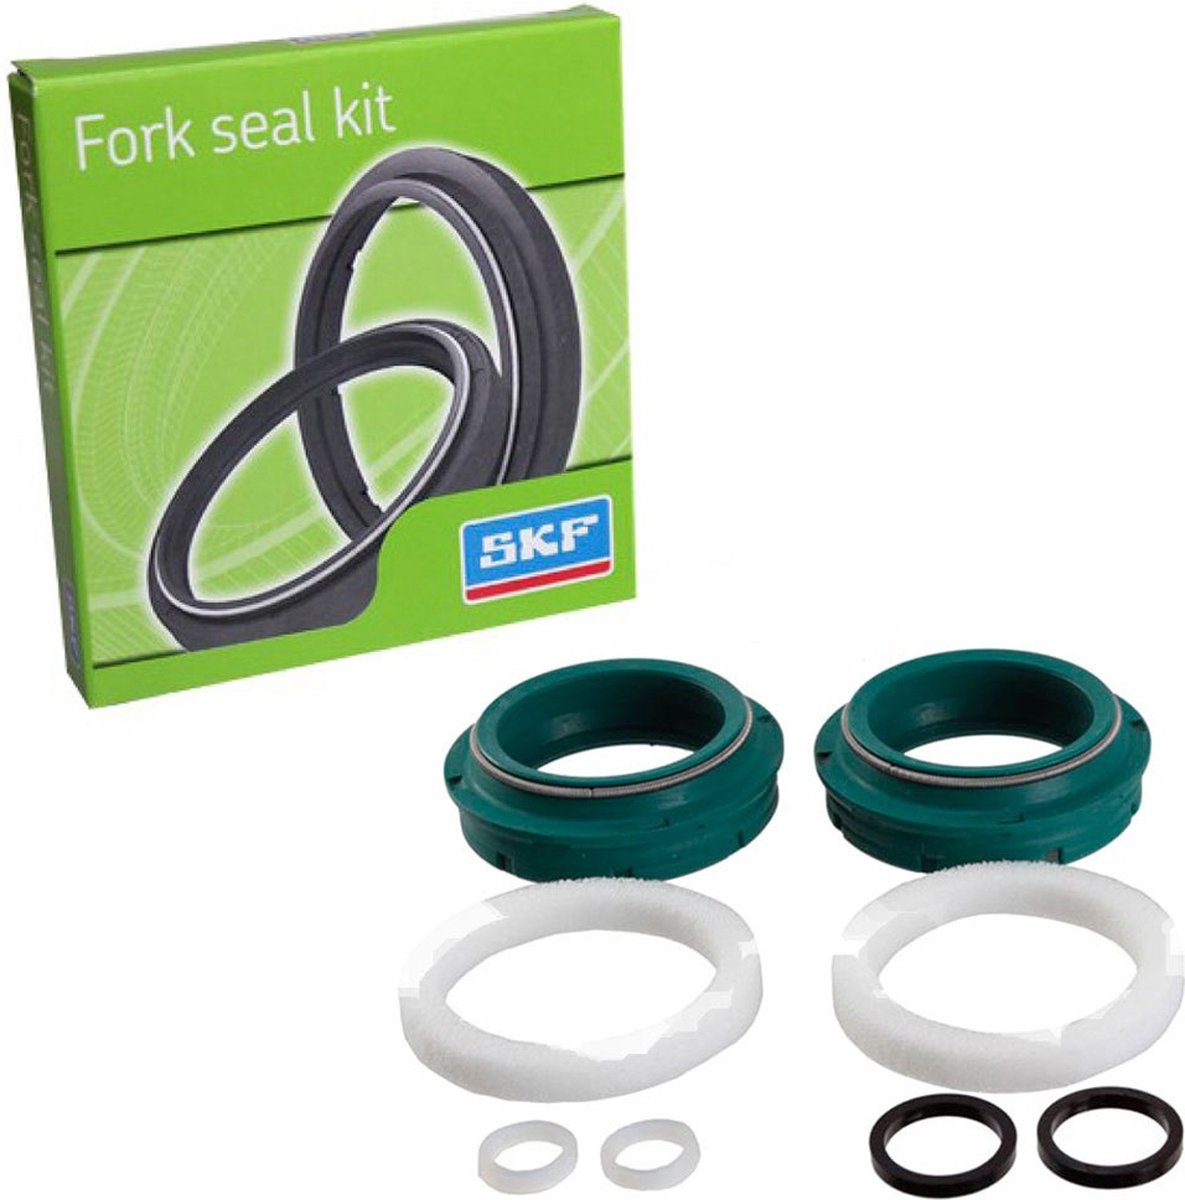 Skf Fork Seal Kit For Fox Old Model 36 Mm Transparant,Groen